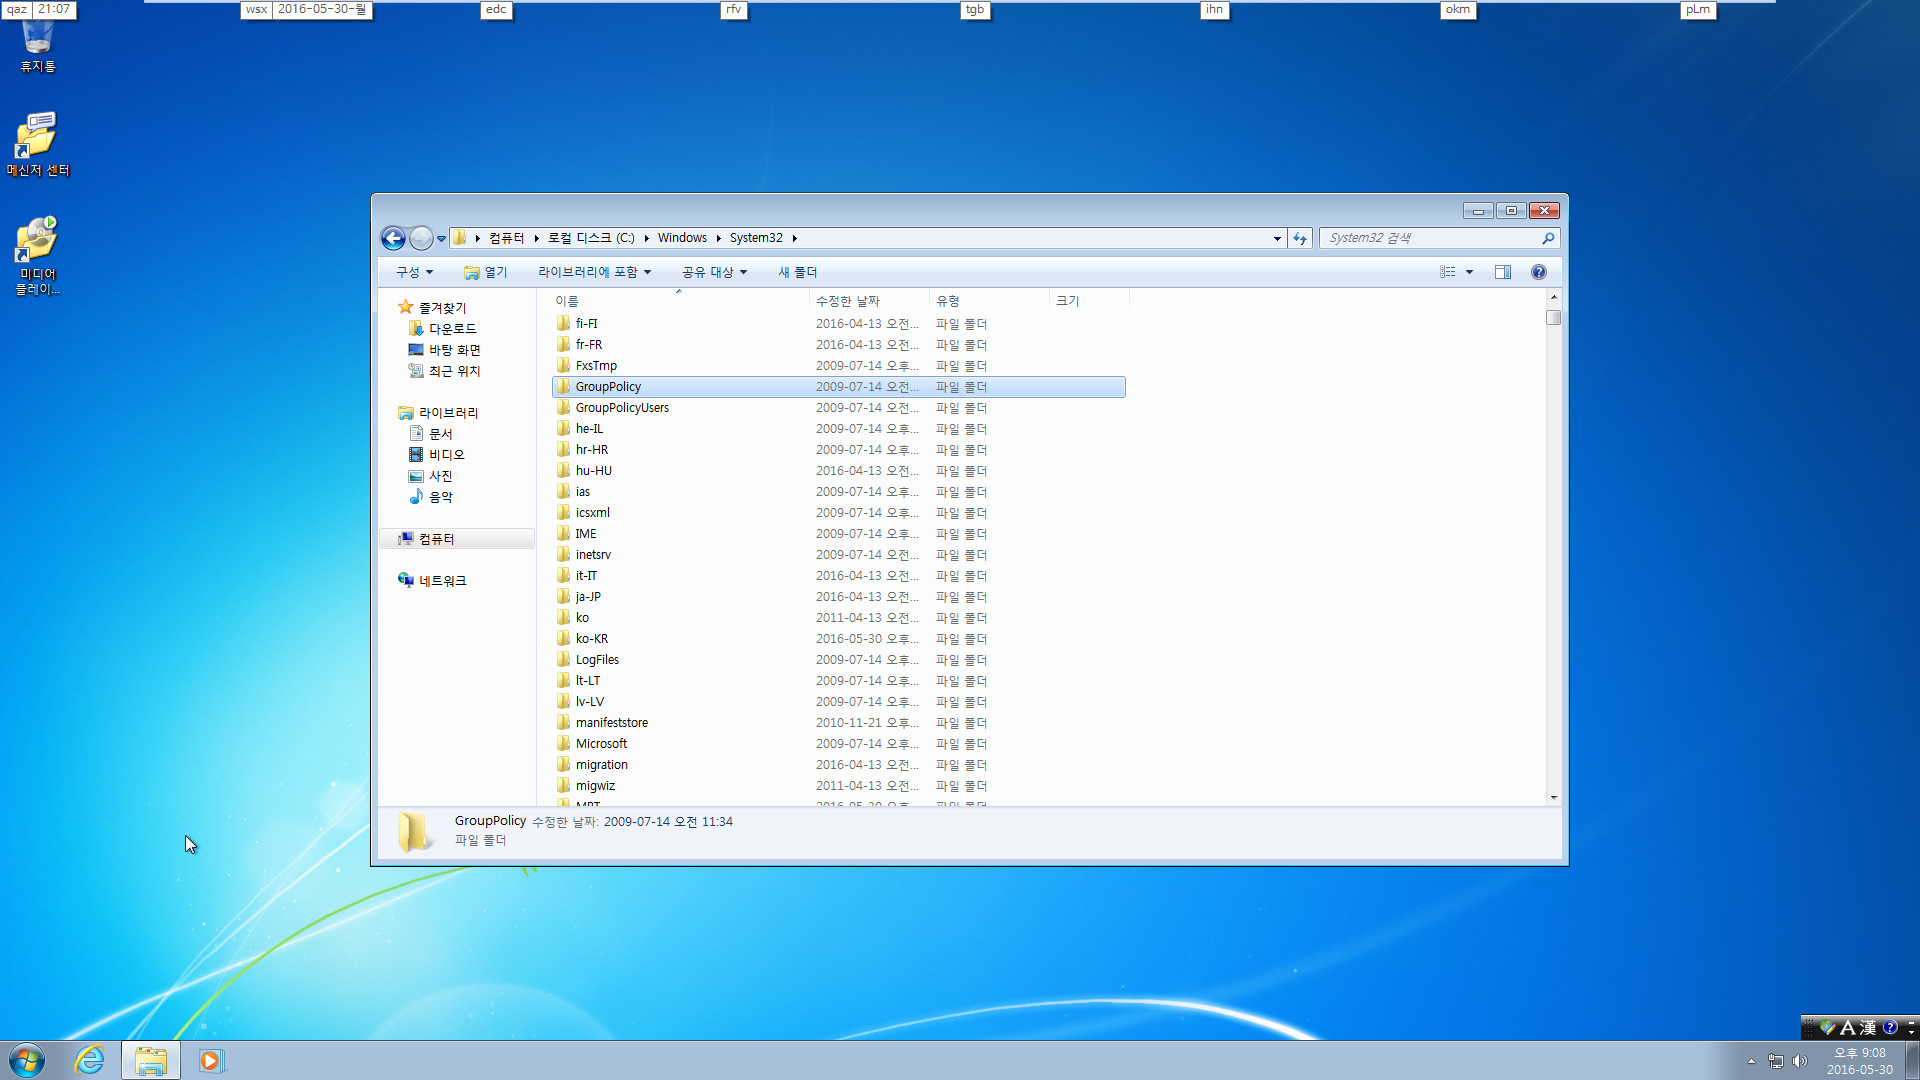 윈도7-윈도10업그레이드테스트-자동업데이트로kb3035583설치하면무슨일이-재부팅하자마자알림아이콘이뜹니다-kb3035583제거하고재부팅하면사라집니다-gwx폴더도제거됩니다2016-05-30_210800.jpg